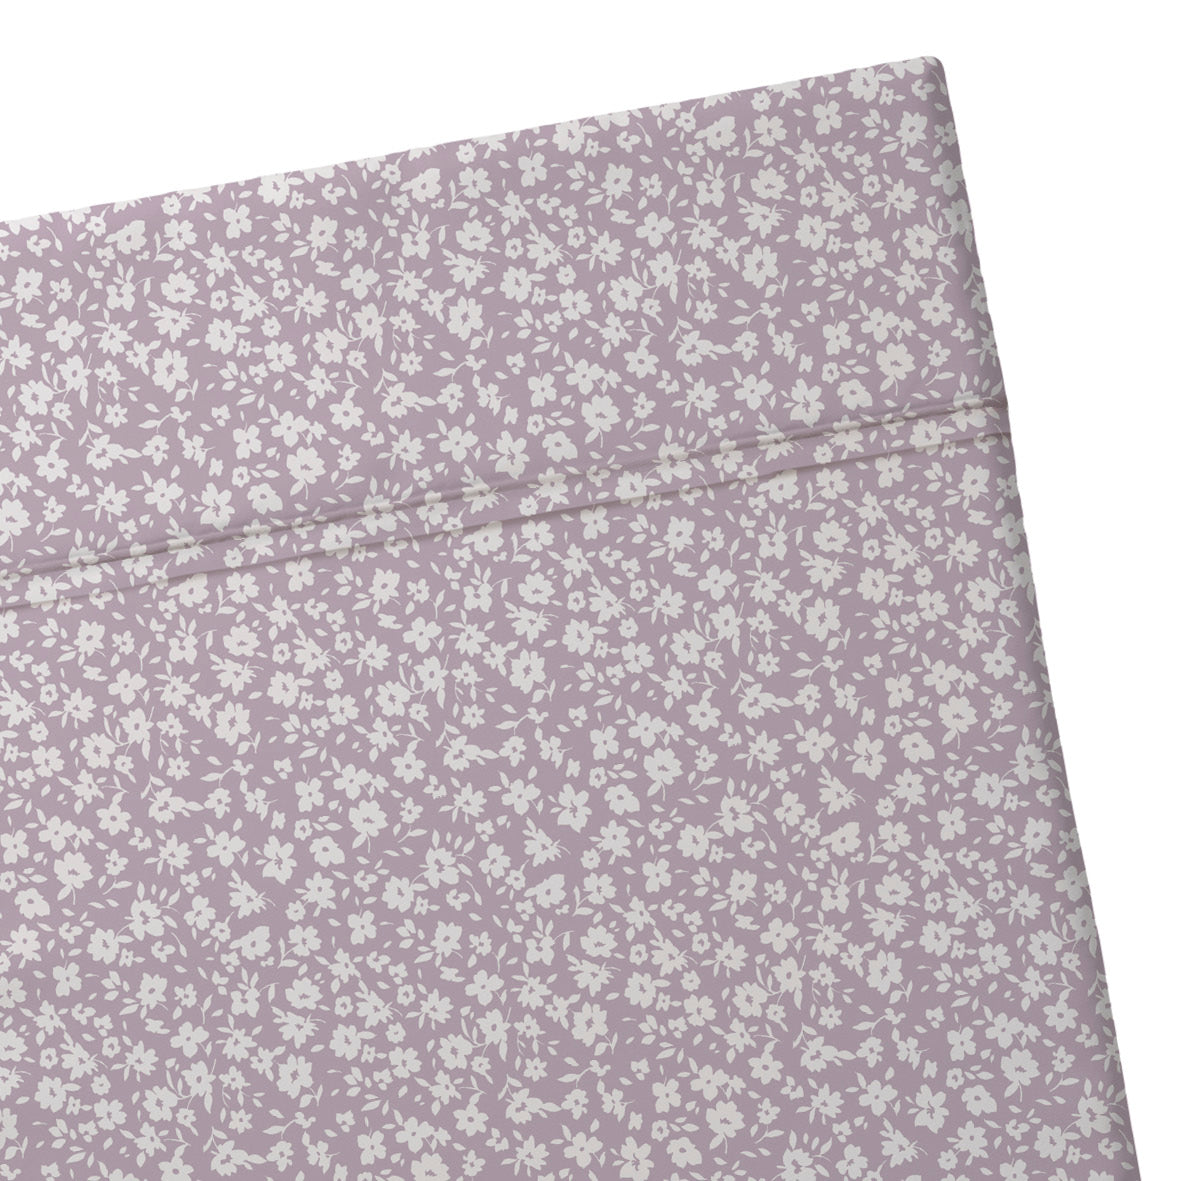 Flat sheet baby cotton satin - Les Yeux de Suzanne Lavender